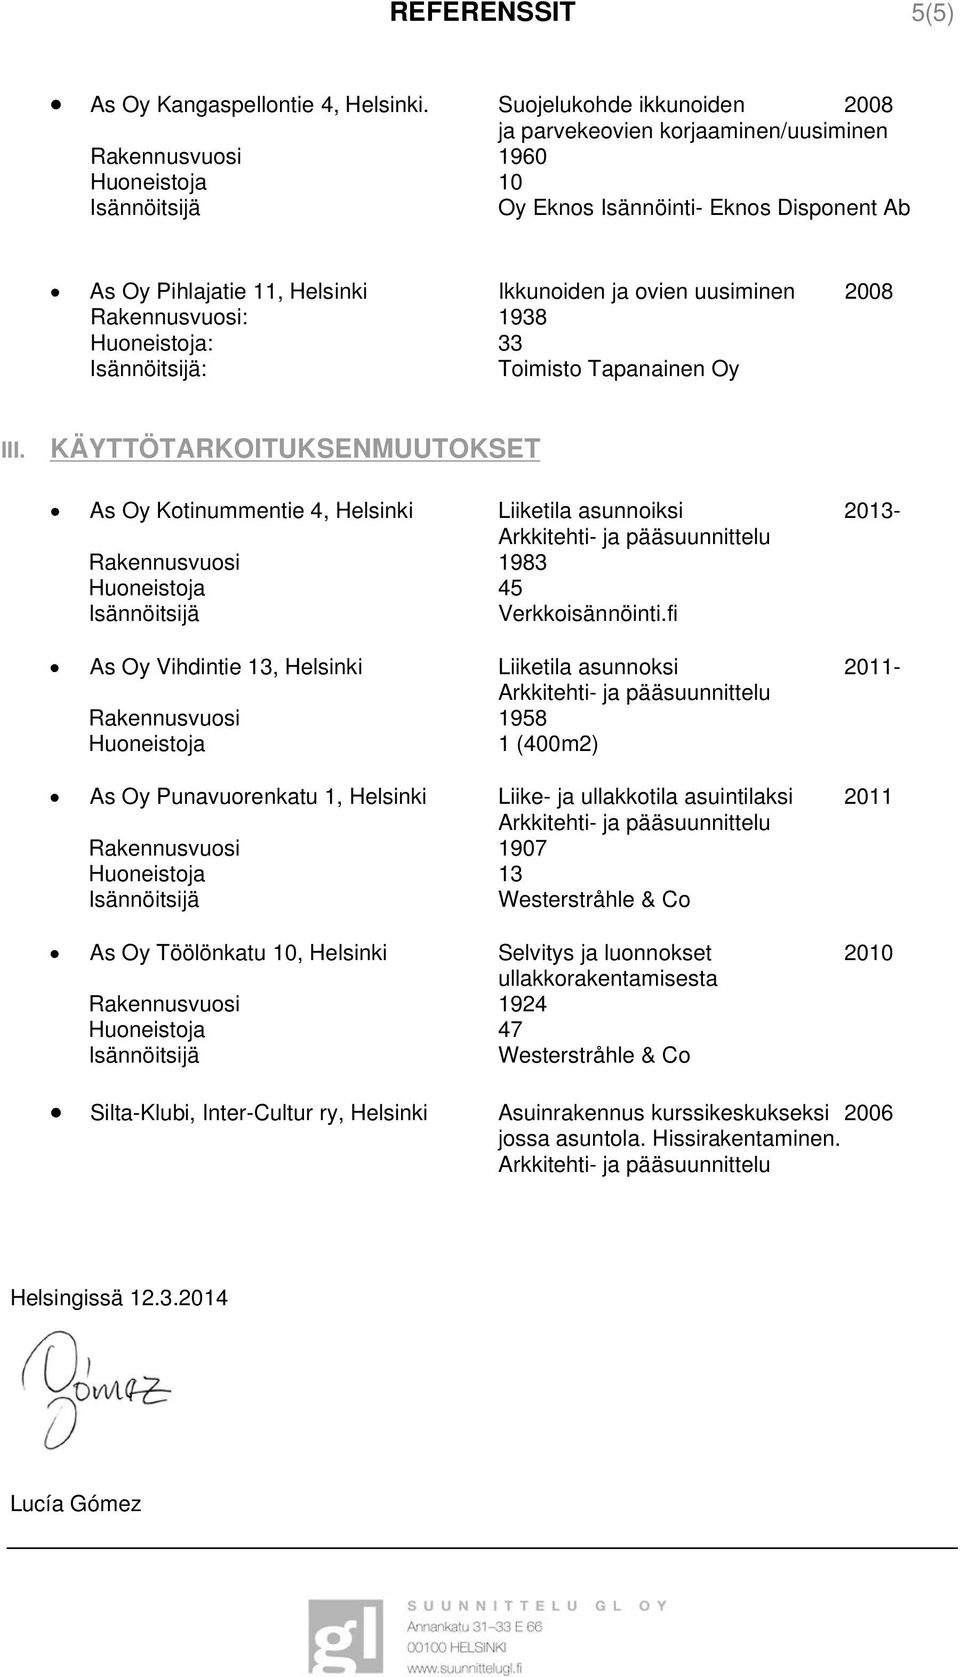 Rakennusvuosi: 1938 Huoneistoja: 33 : Toimisto Tapanainen Oy III.